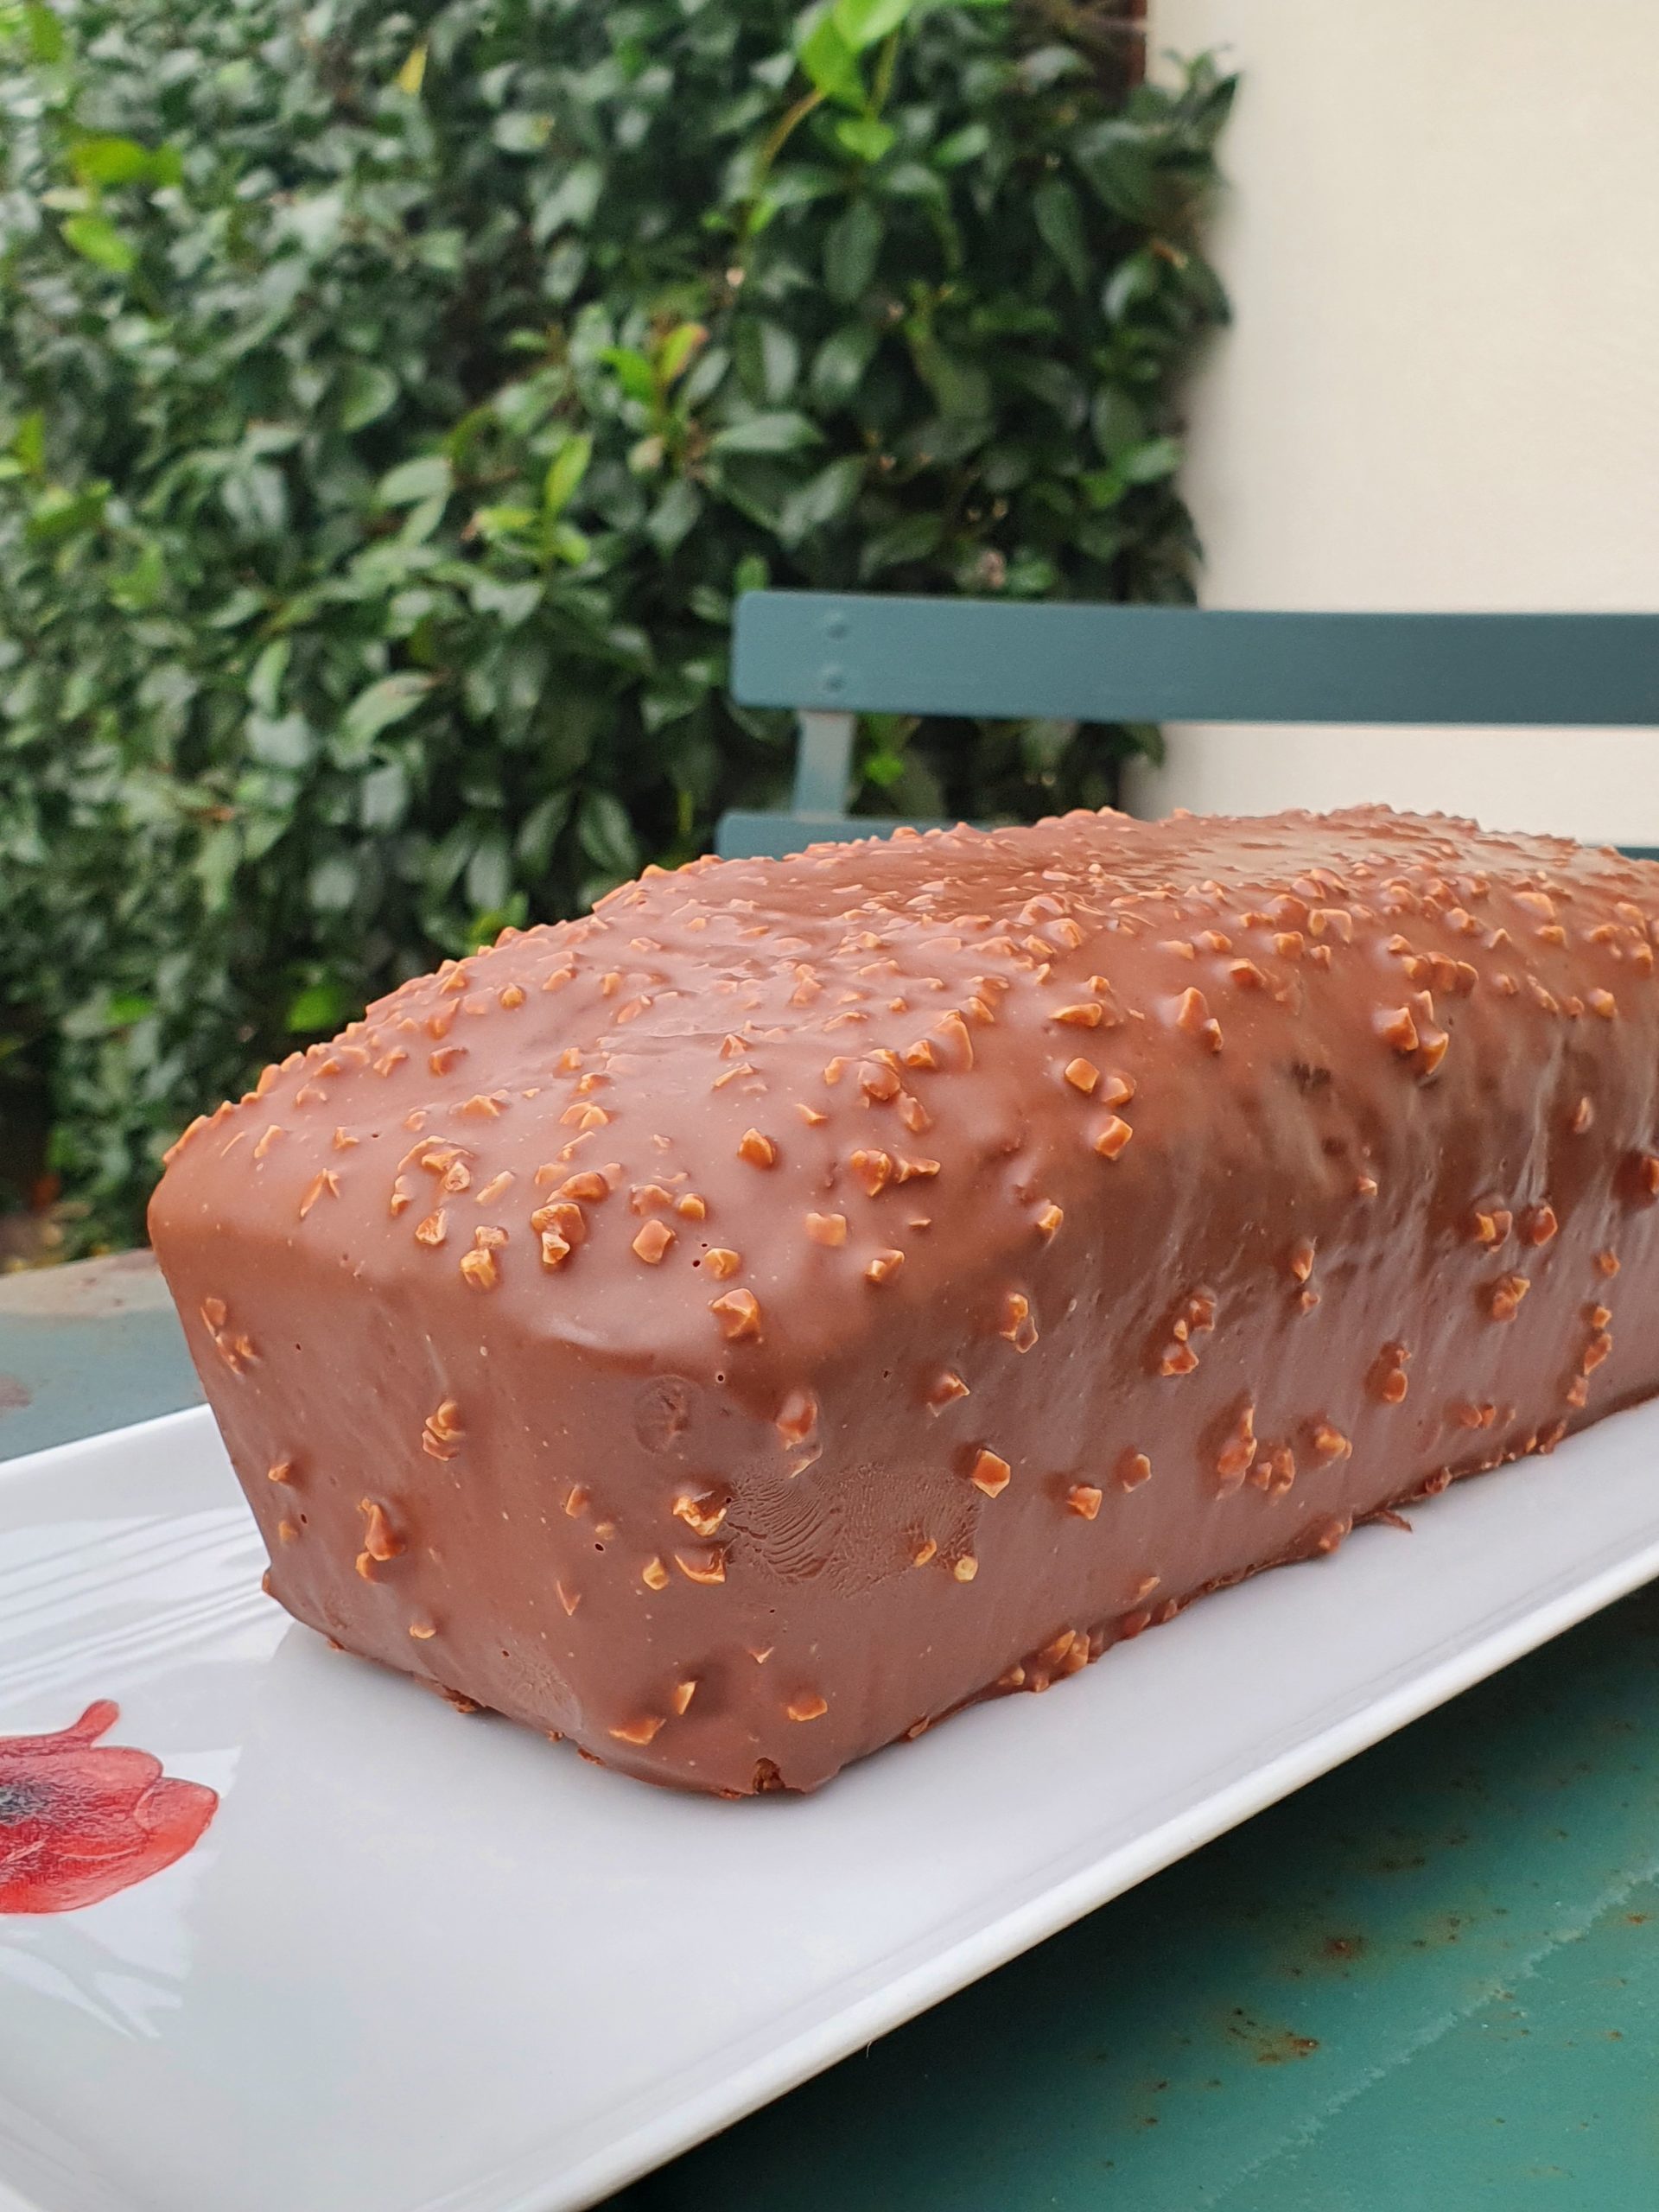 Le cake marbré de Cyril Lignac